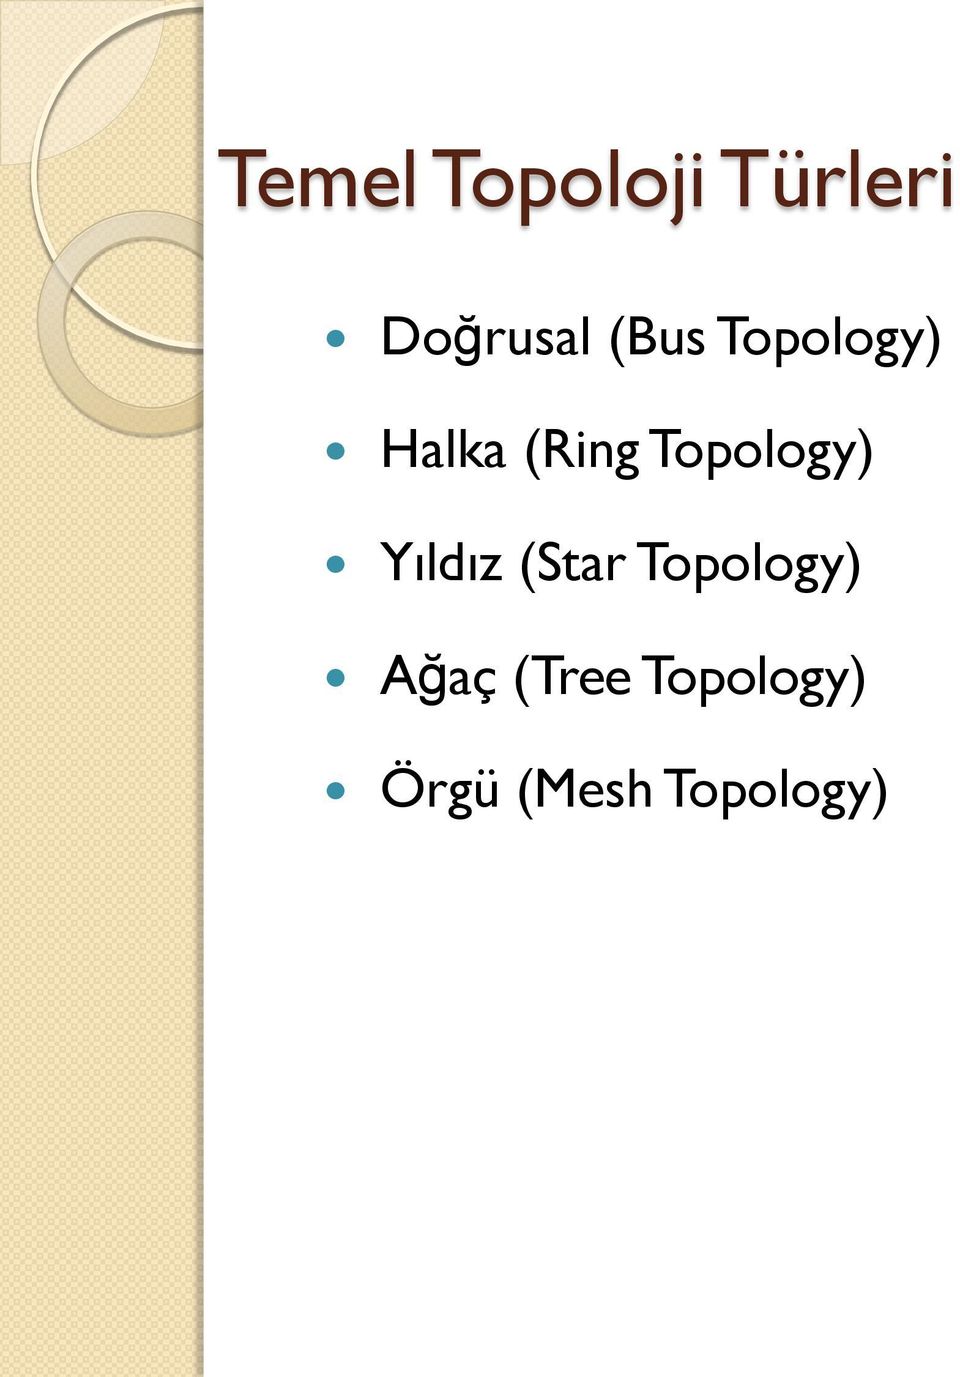 Topology) Yıldız (Star Topology)